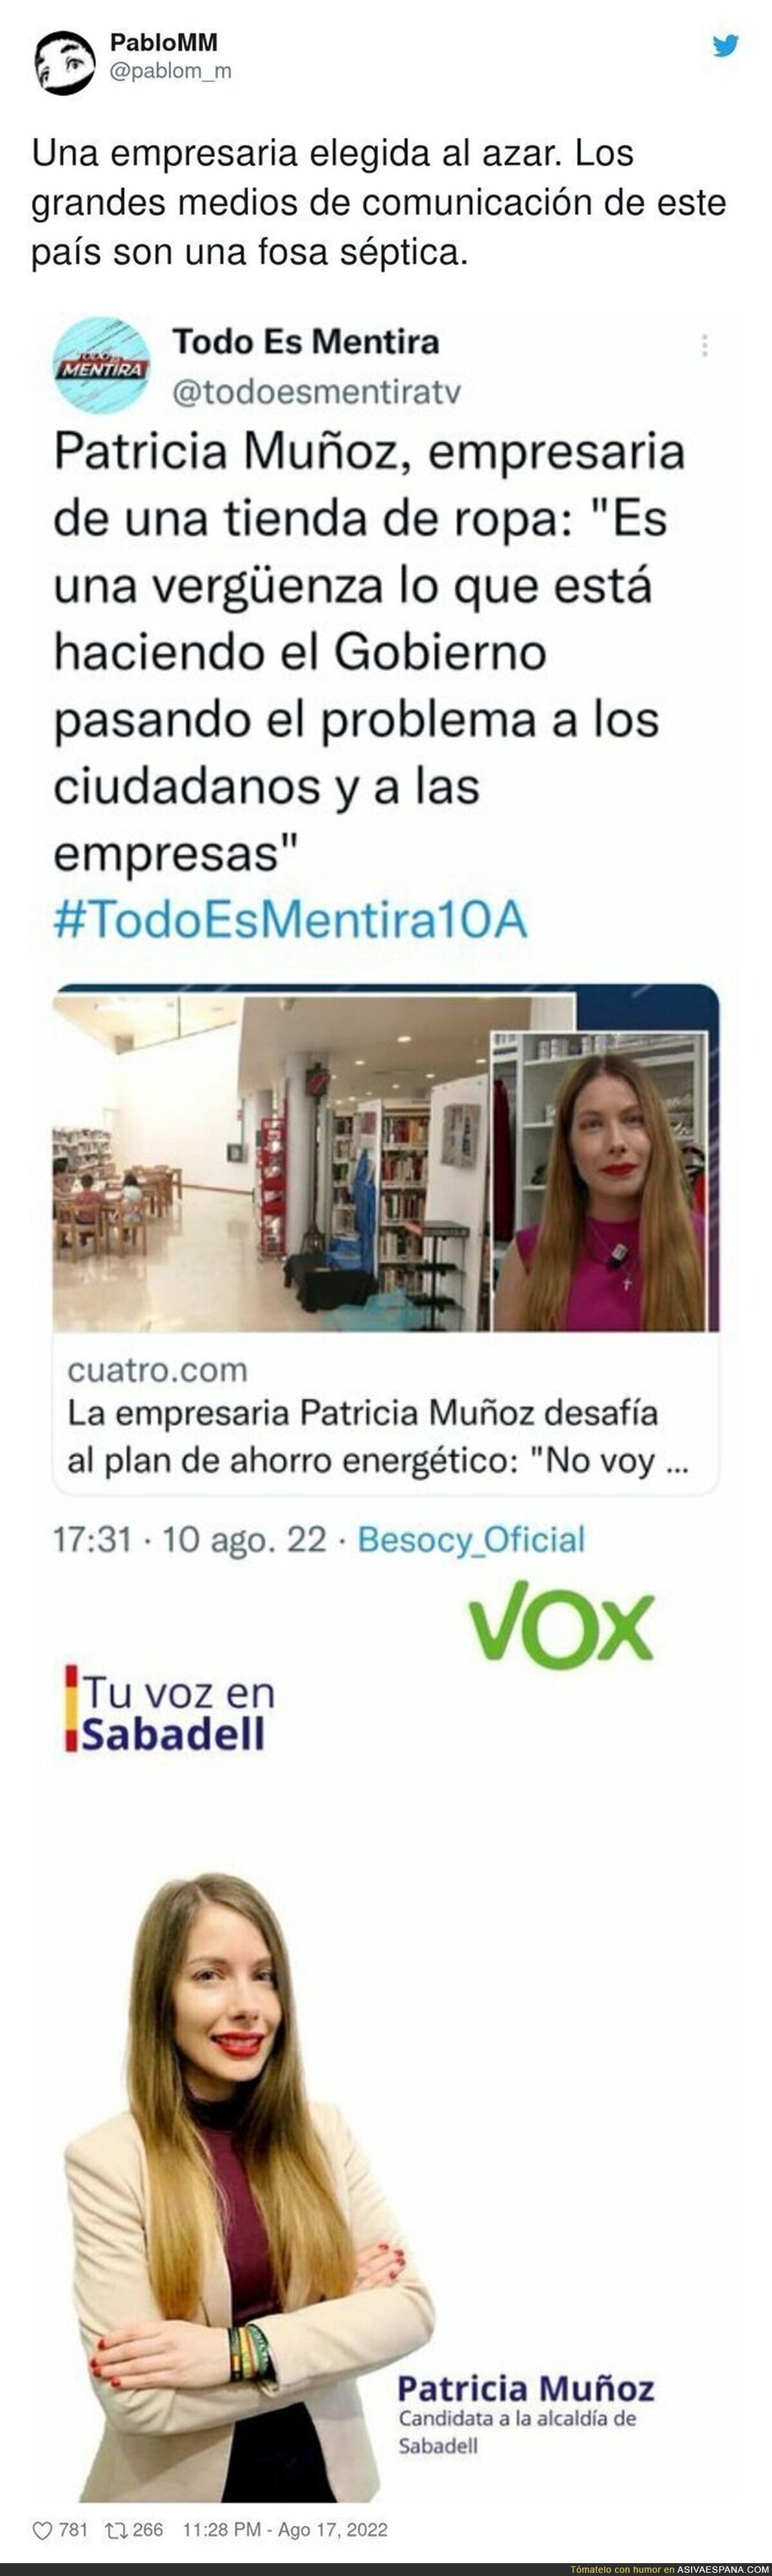 'Todo es Mentira' la vuelve a liar entrevistando a esta mujer que en realidad es de VOX